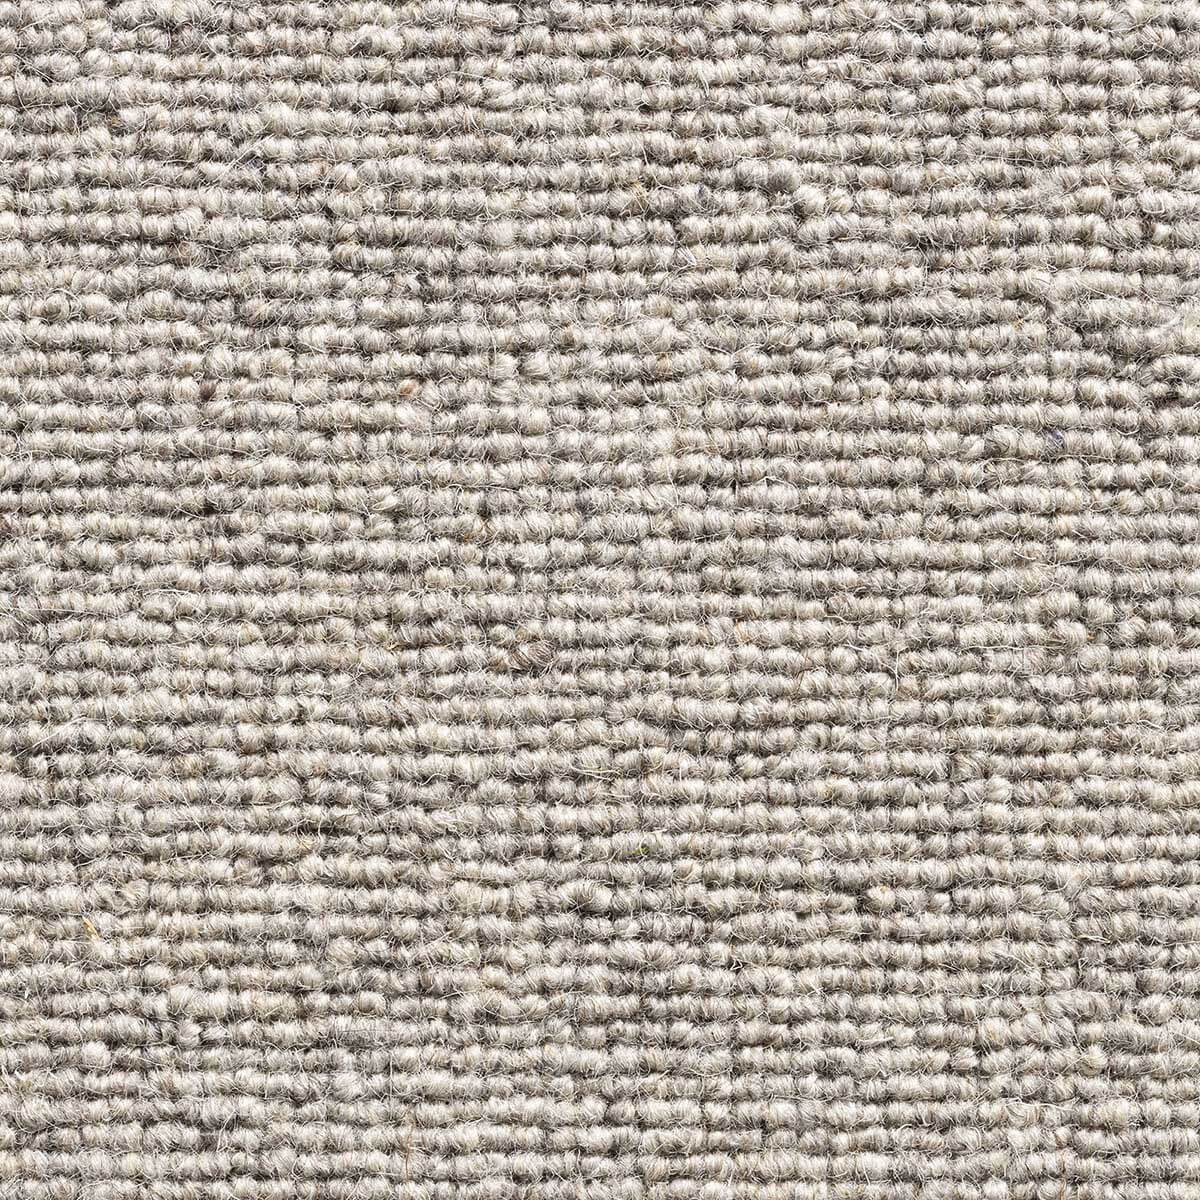 Glen Loop Wool Carpet - Coir 276